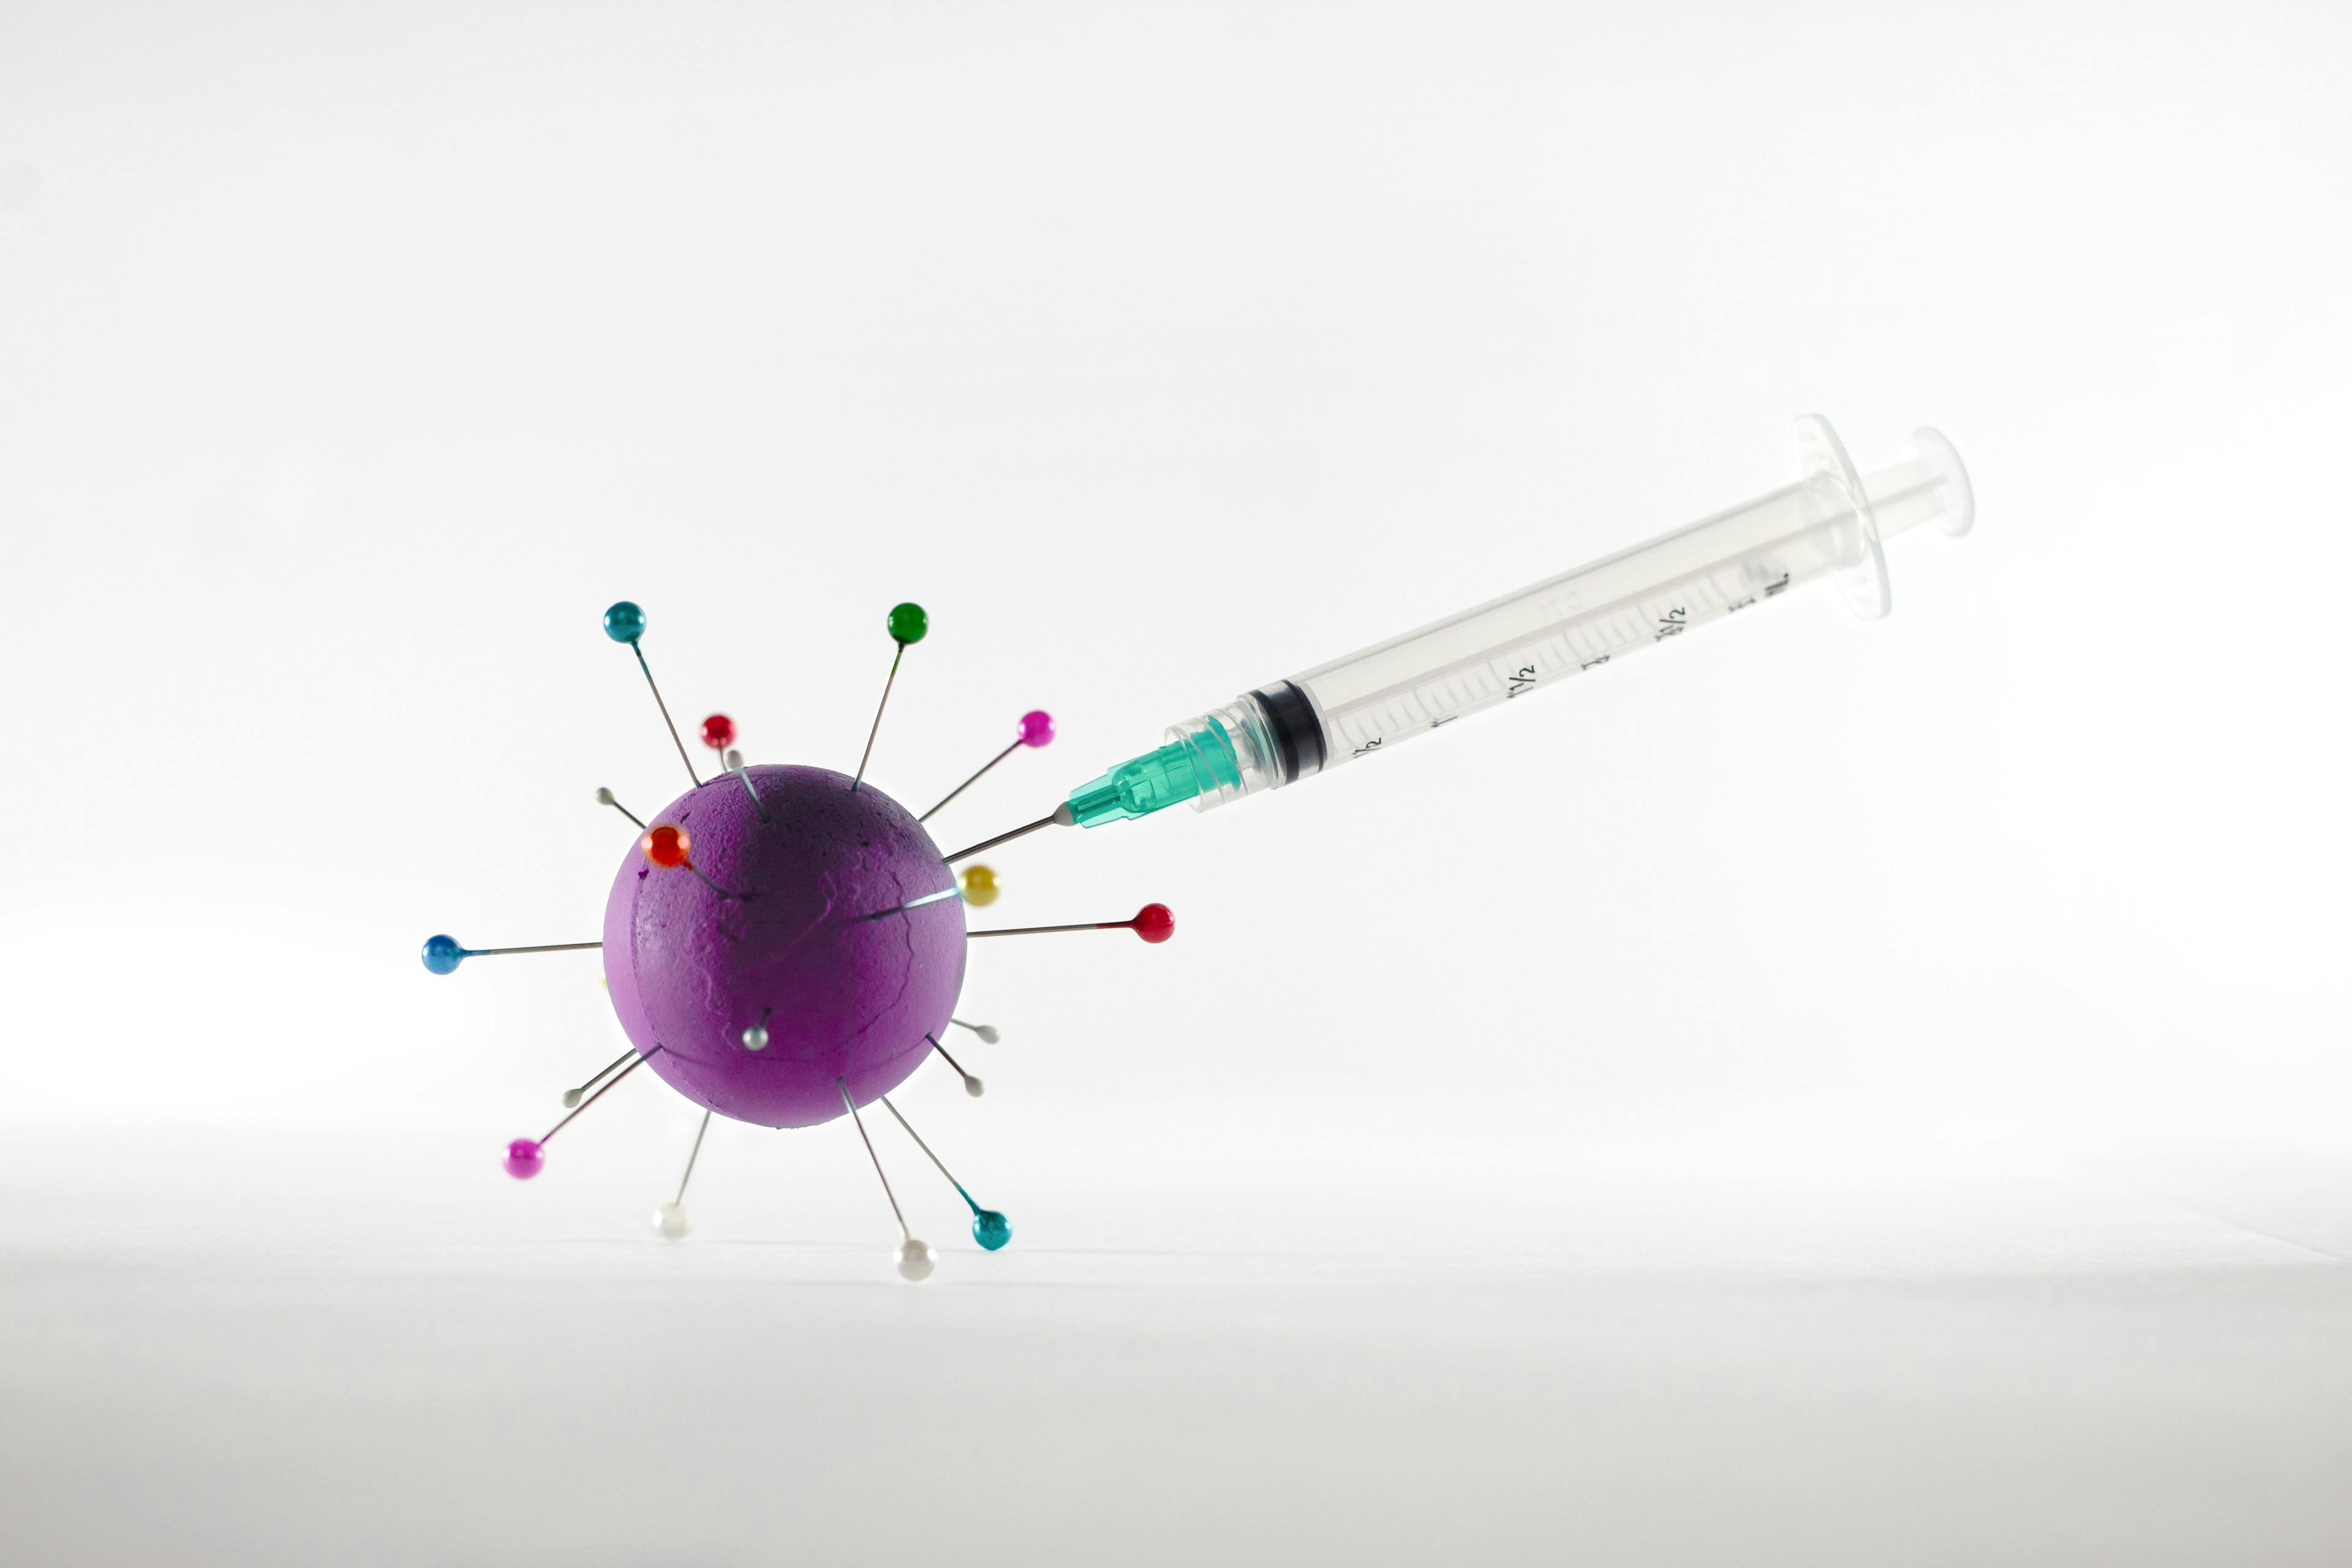 Pfizer-BioNTech, Moderna Seek FDA EUA for Bivalent Vaccine Boosters in Pediatric Population